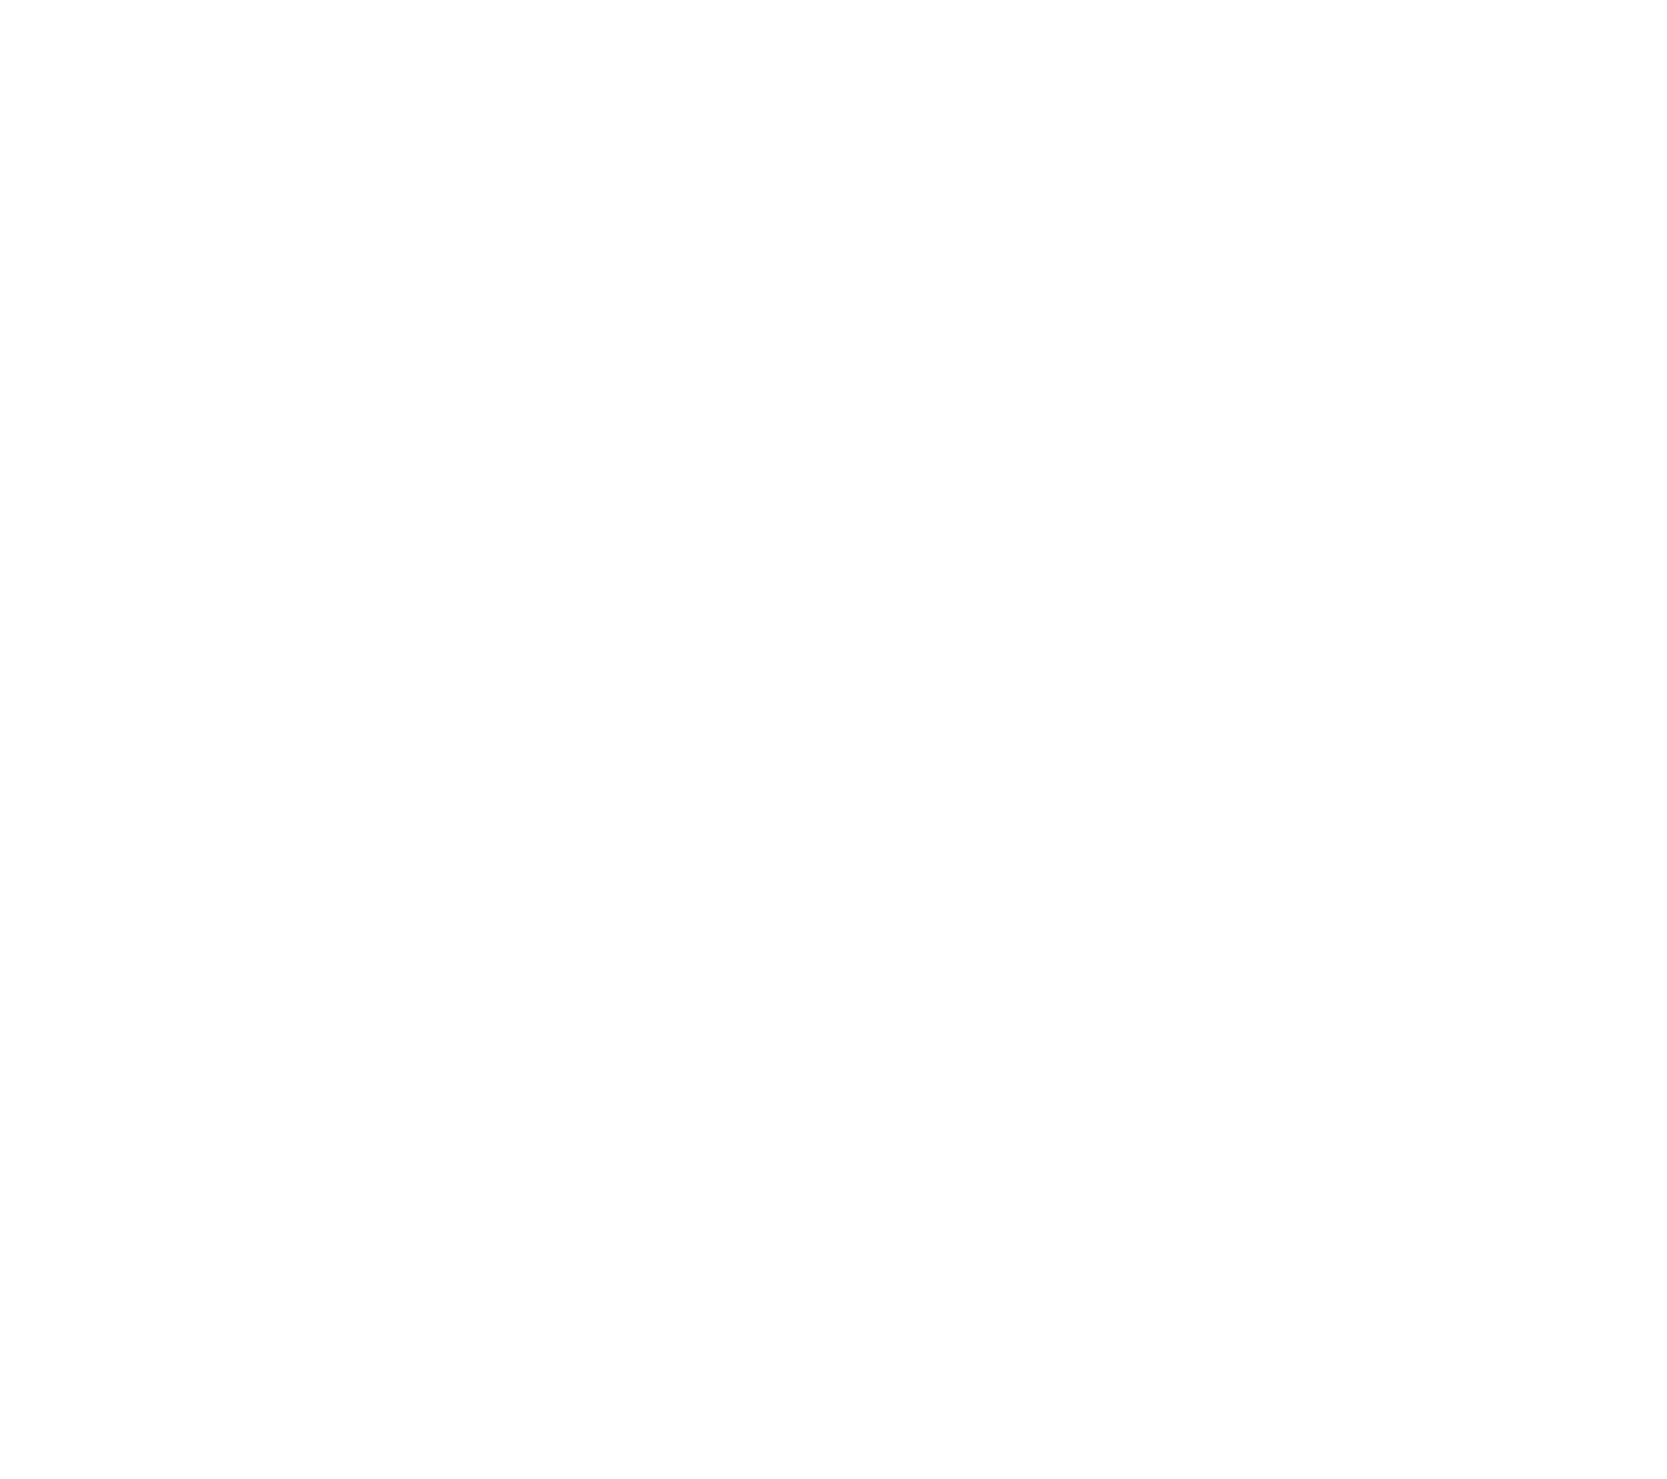 NU.nl